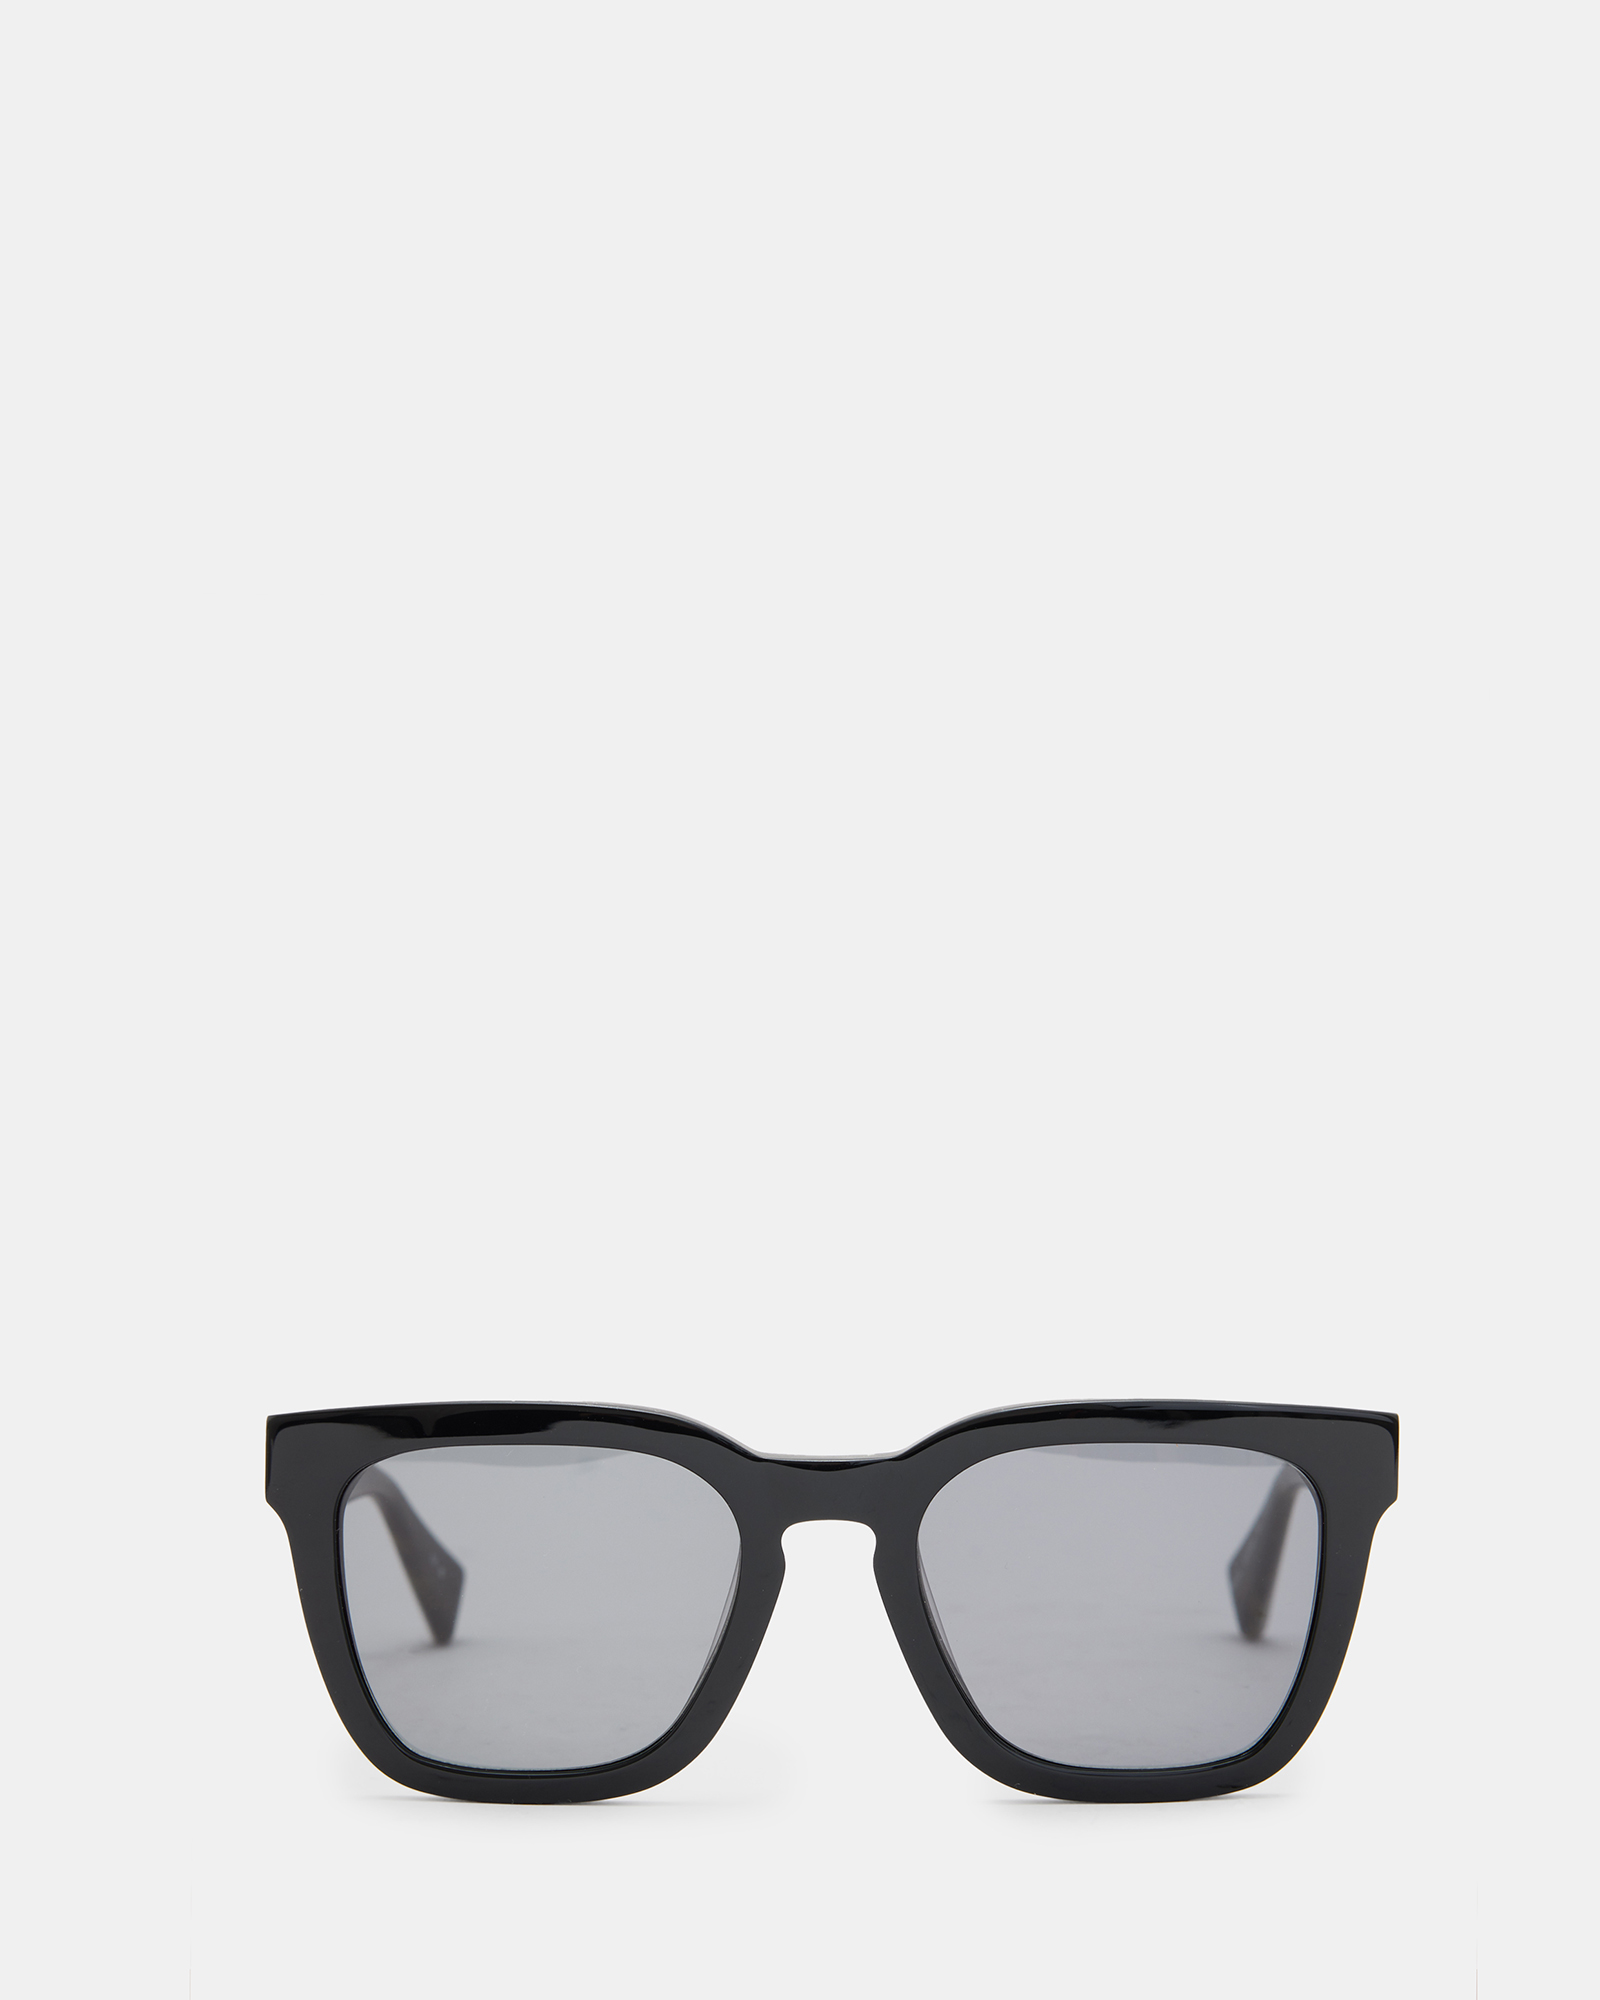 AllSaints Phoenix Square Sunglasses,, Black, Size: One Size